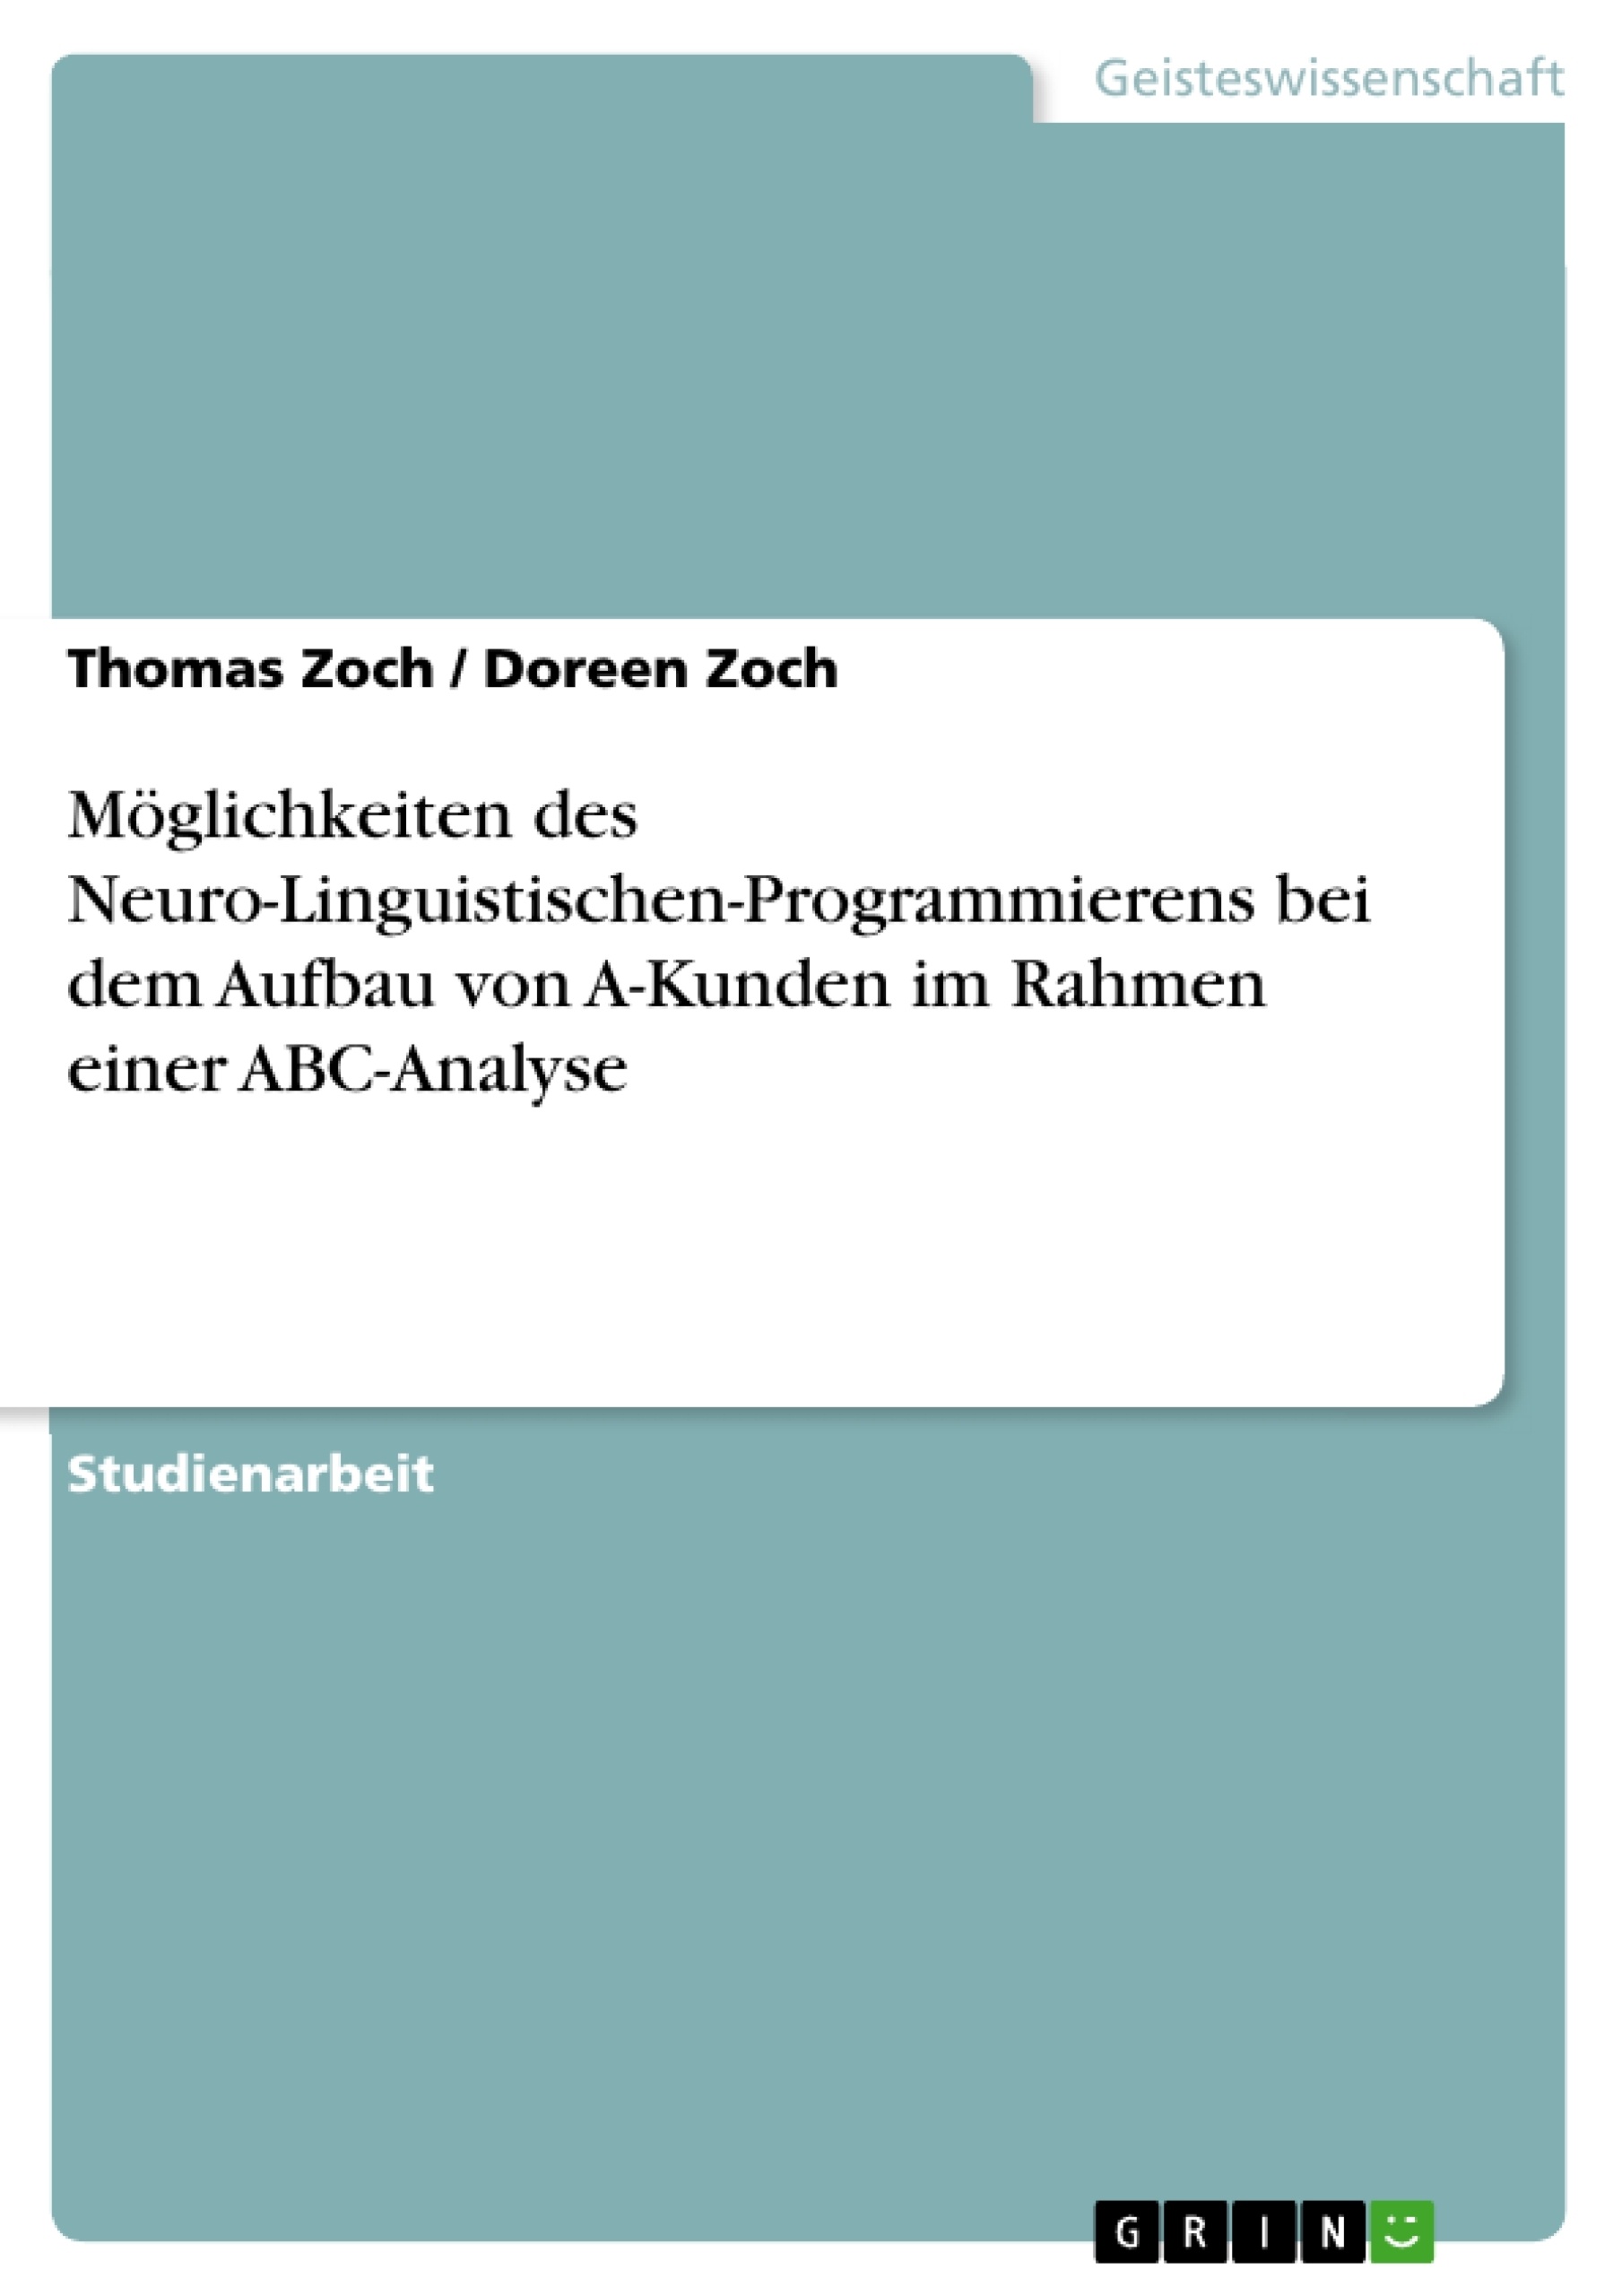 Titre: Möglichkeiten des Neuro-Linguistischen-Programmierens bei dem Aufbau von A-Kunden im Rahmen einer ABC-Analyse